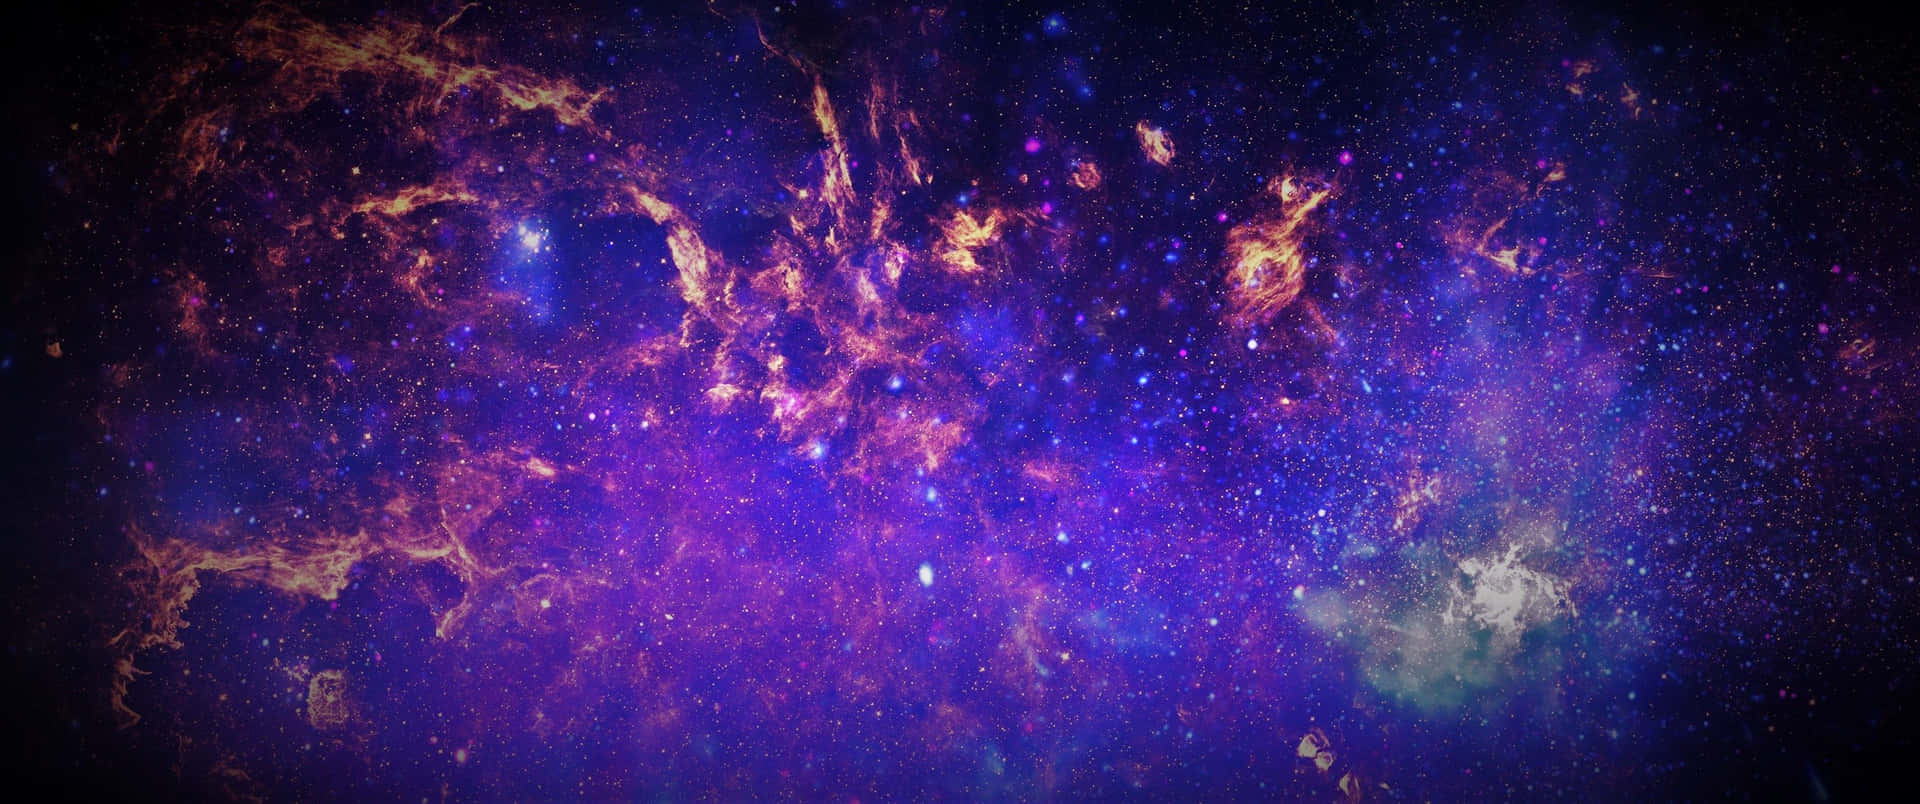 En Storslagen Utsträckning Av Vintergatan Med Talrika Stjärnor Och Nebulosor, För Dator- Eller Mobilskrivbordet. Wallpaper